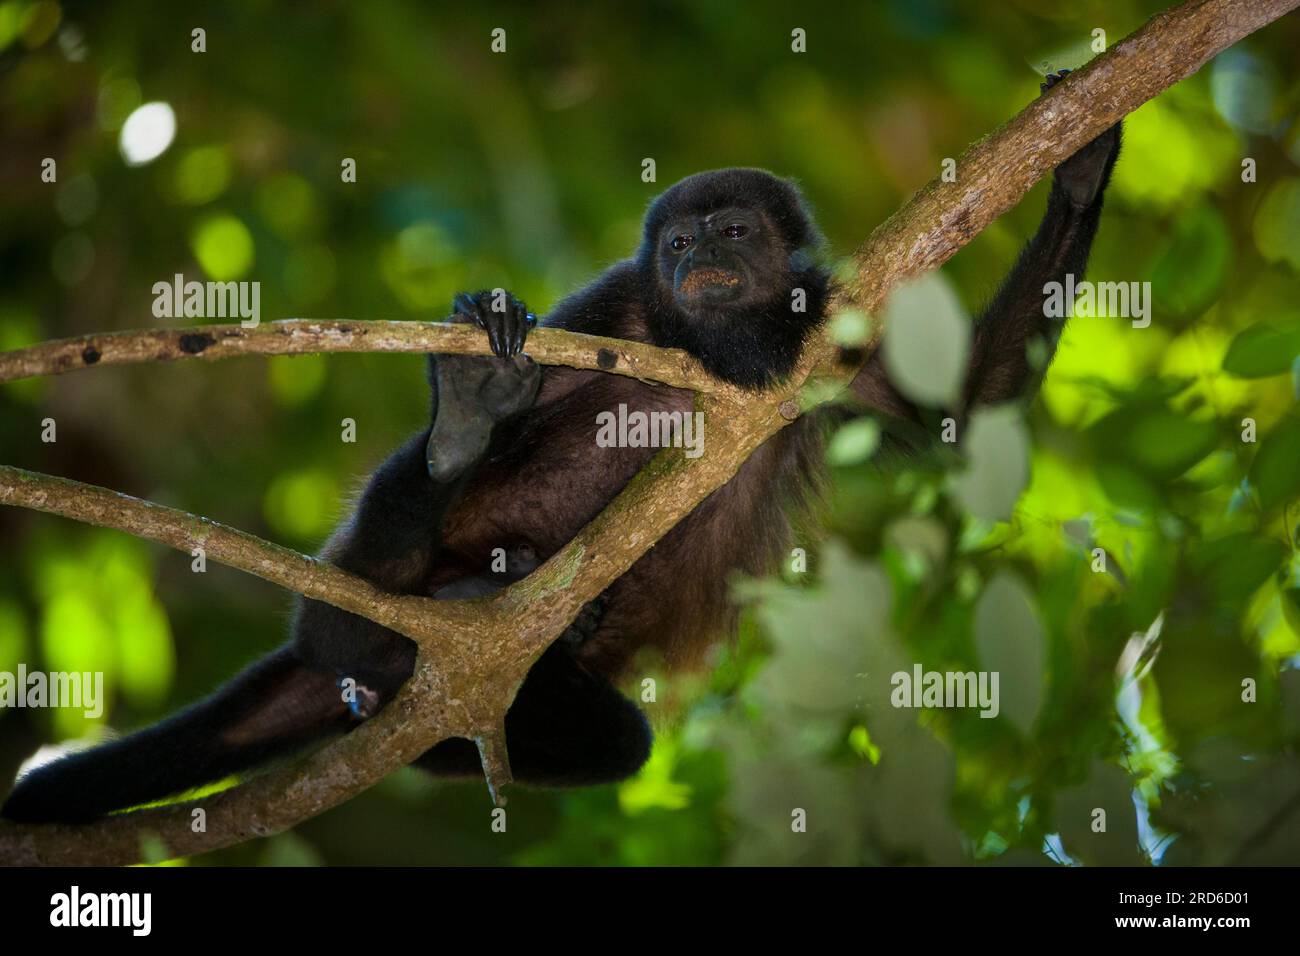 Coiba Howler Monkey, Alouatta coibensis, inside the rainforest at Coiba national park, Pacific ocean, Veraguas province, Republic of Panama. Stock Photo